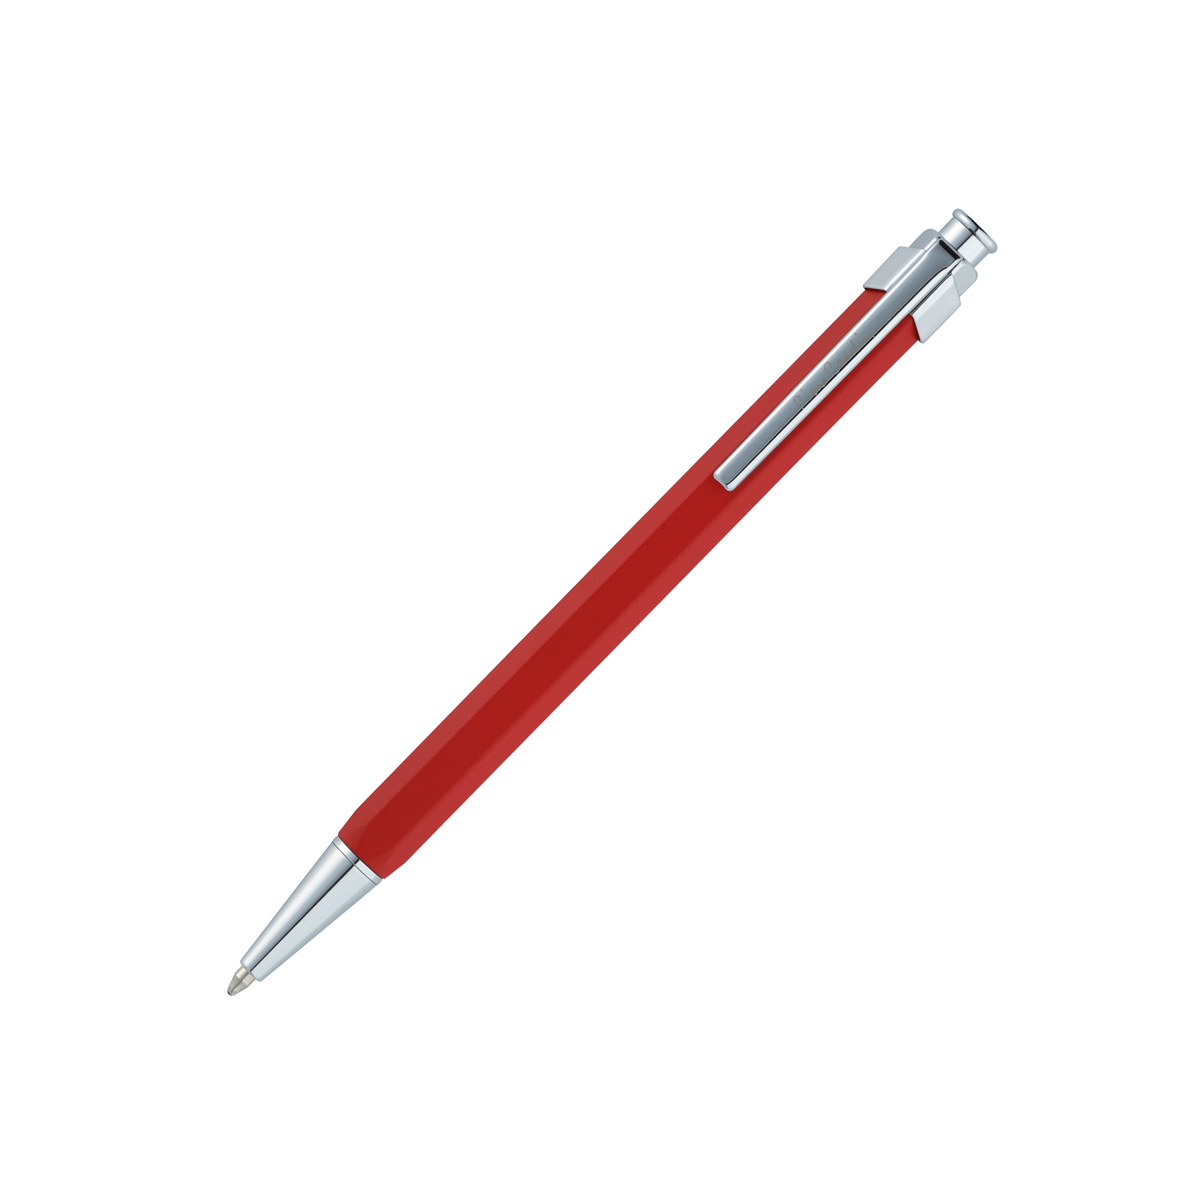 PC1924BP Ручка шариковая  Pierre Cardin Prizma корпус латунь с лакированным покрытием, хром,сталь.